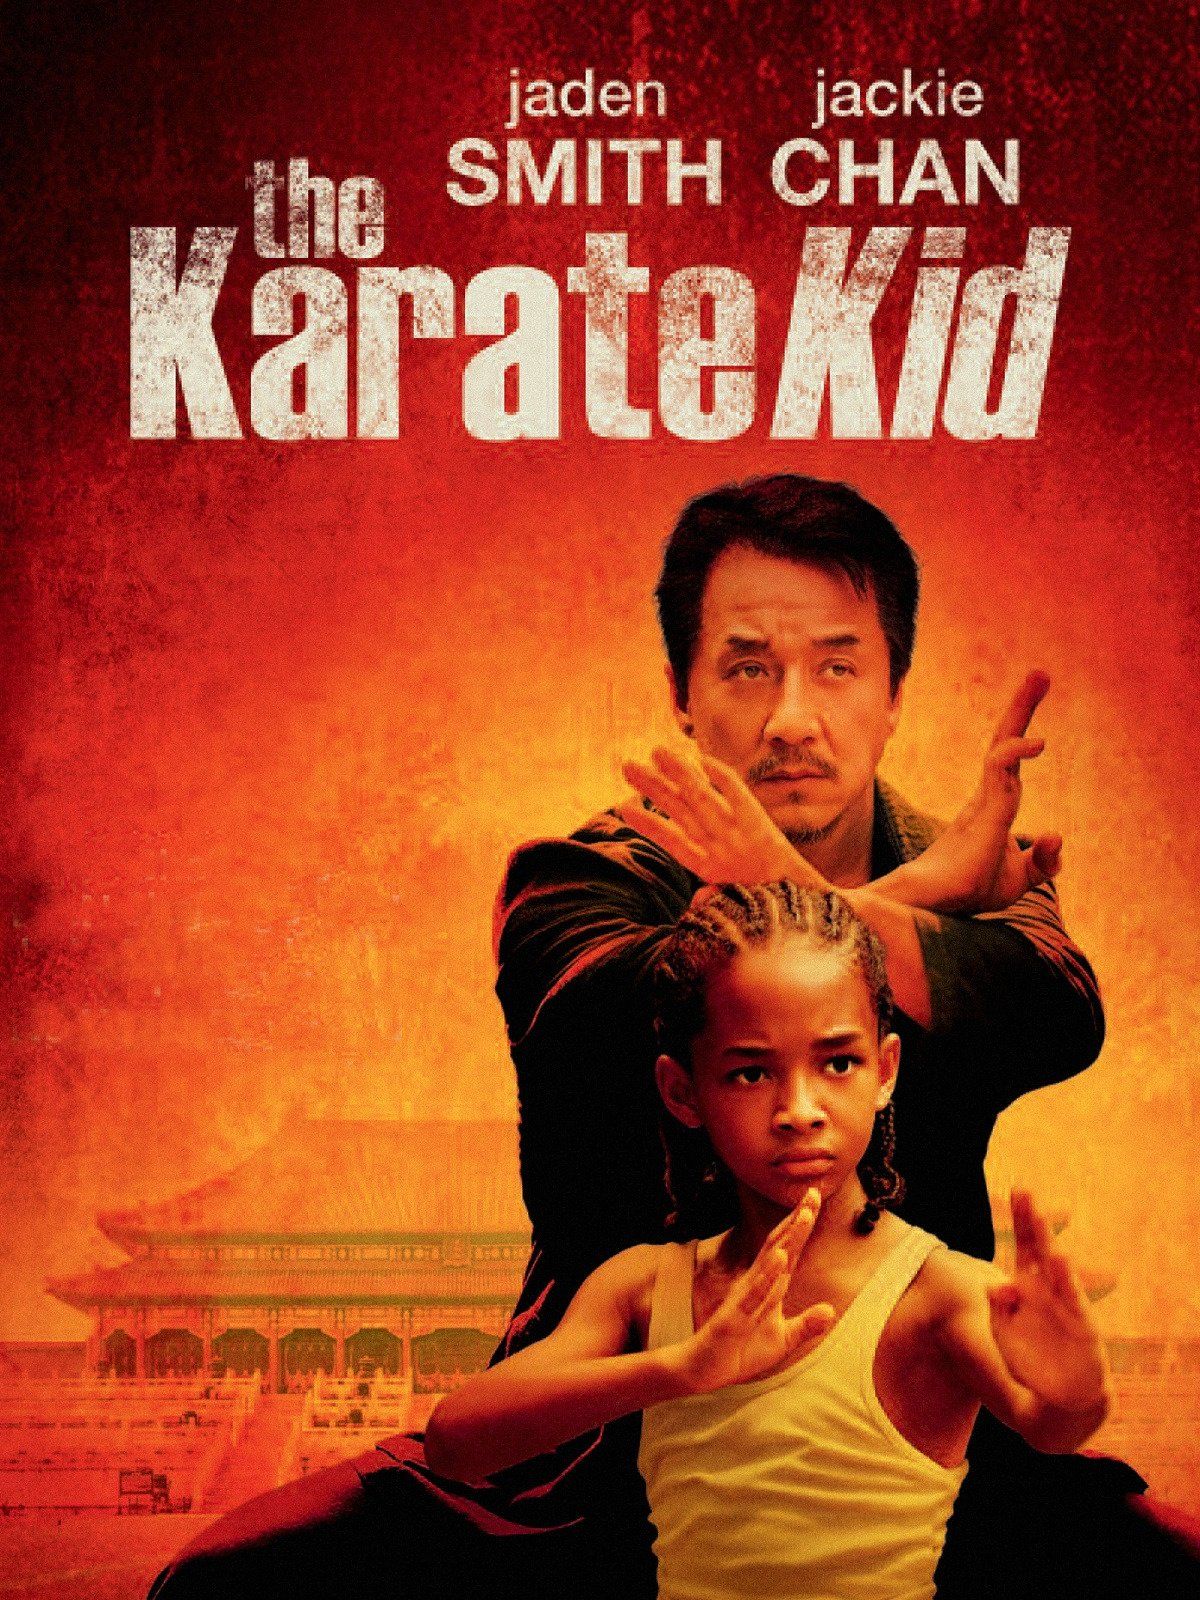 karate kid 2010 free download